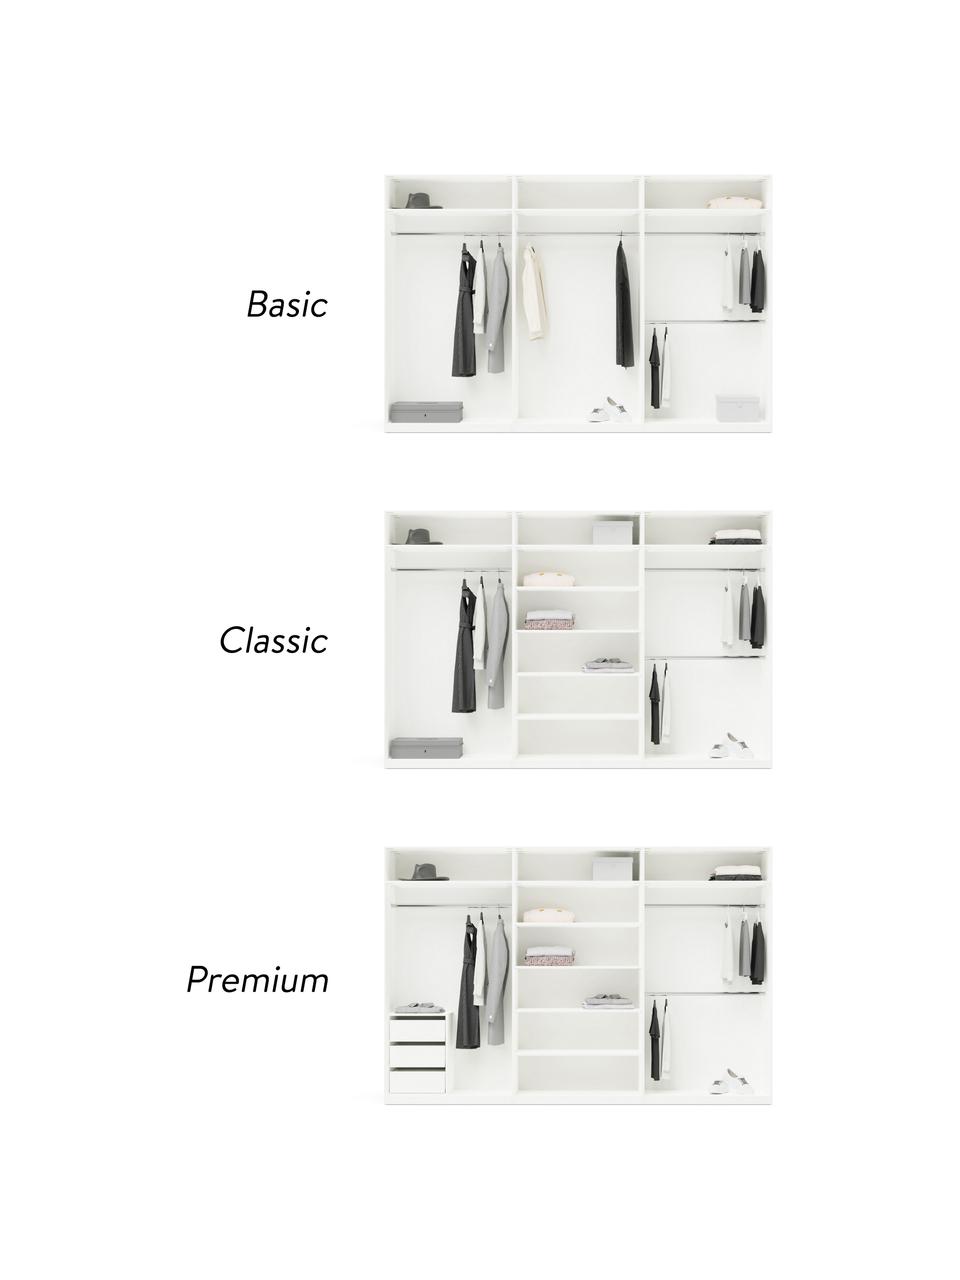 Szafa modułowa Simone, 6-drzwiowa, różne warianty, Korpus: płyta wiórowa pokryta mel, Beżowy, W 200 cm, Basic